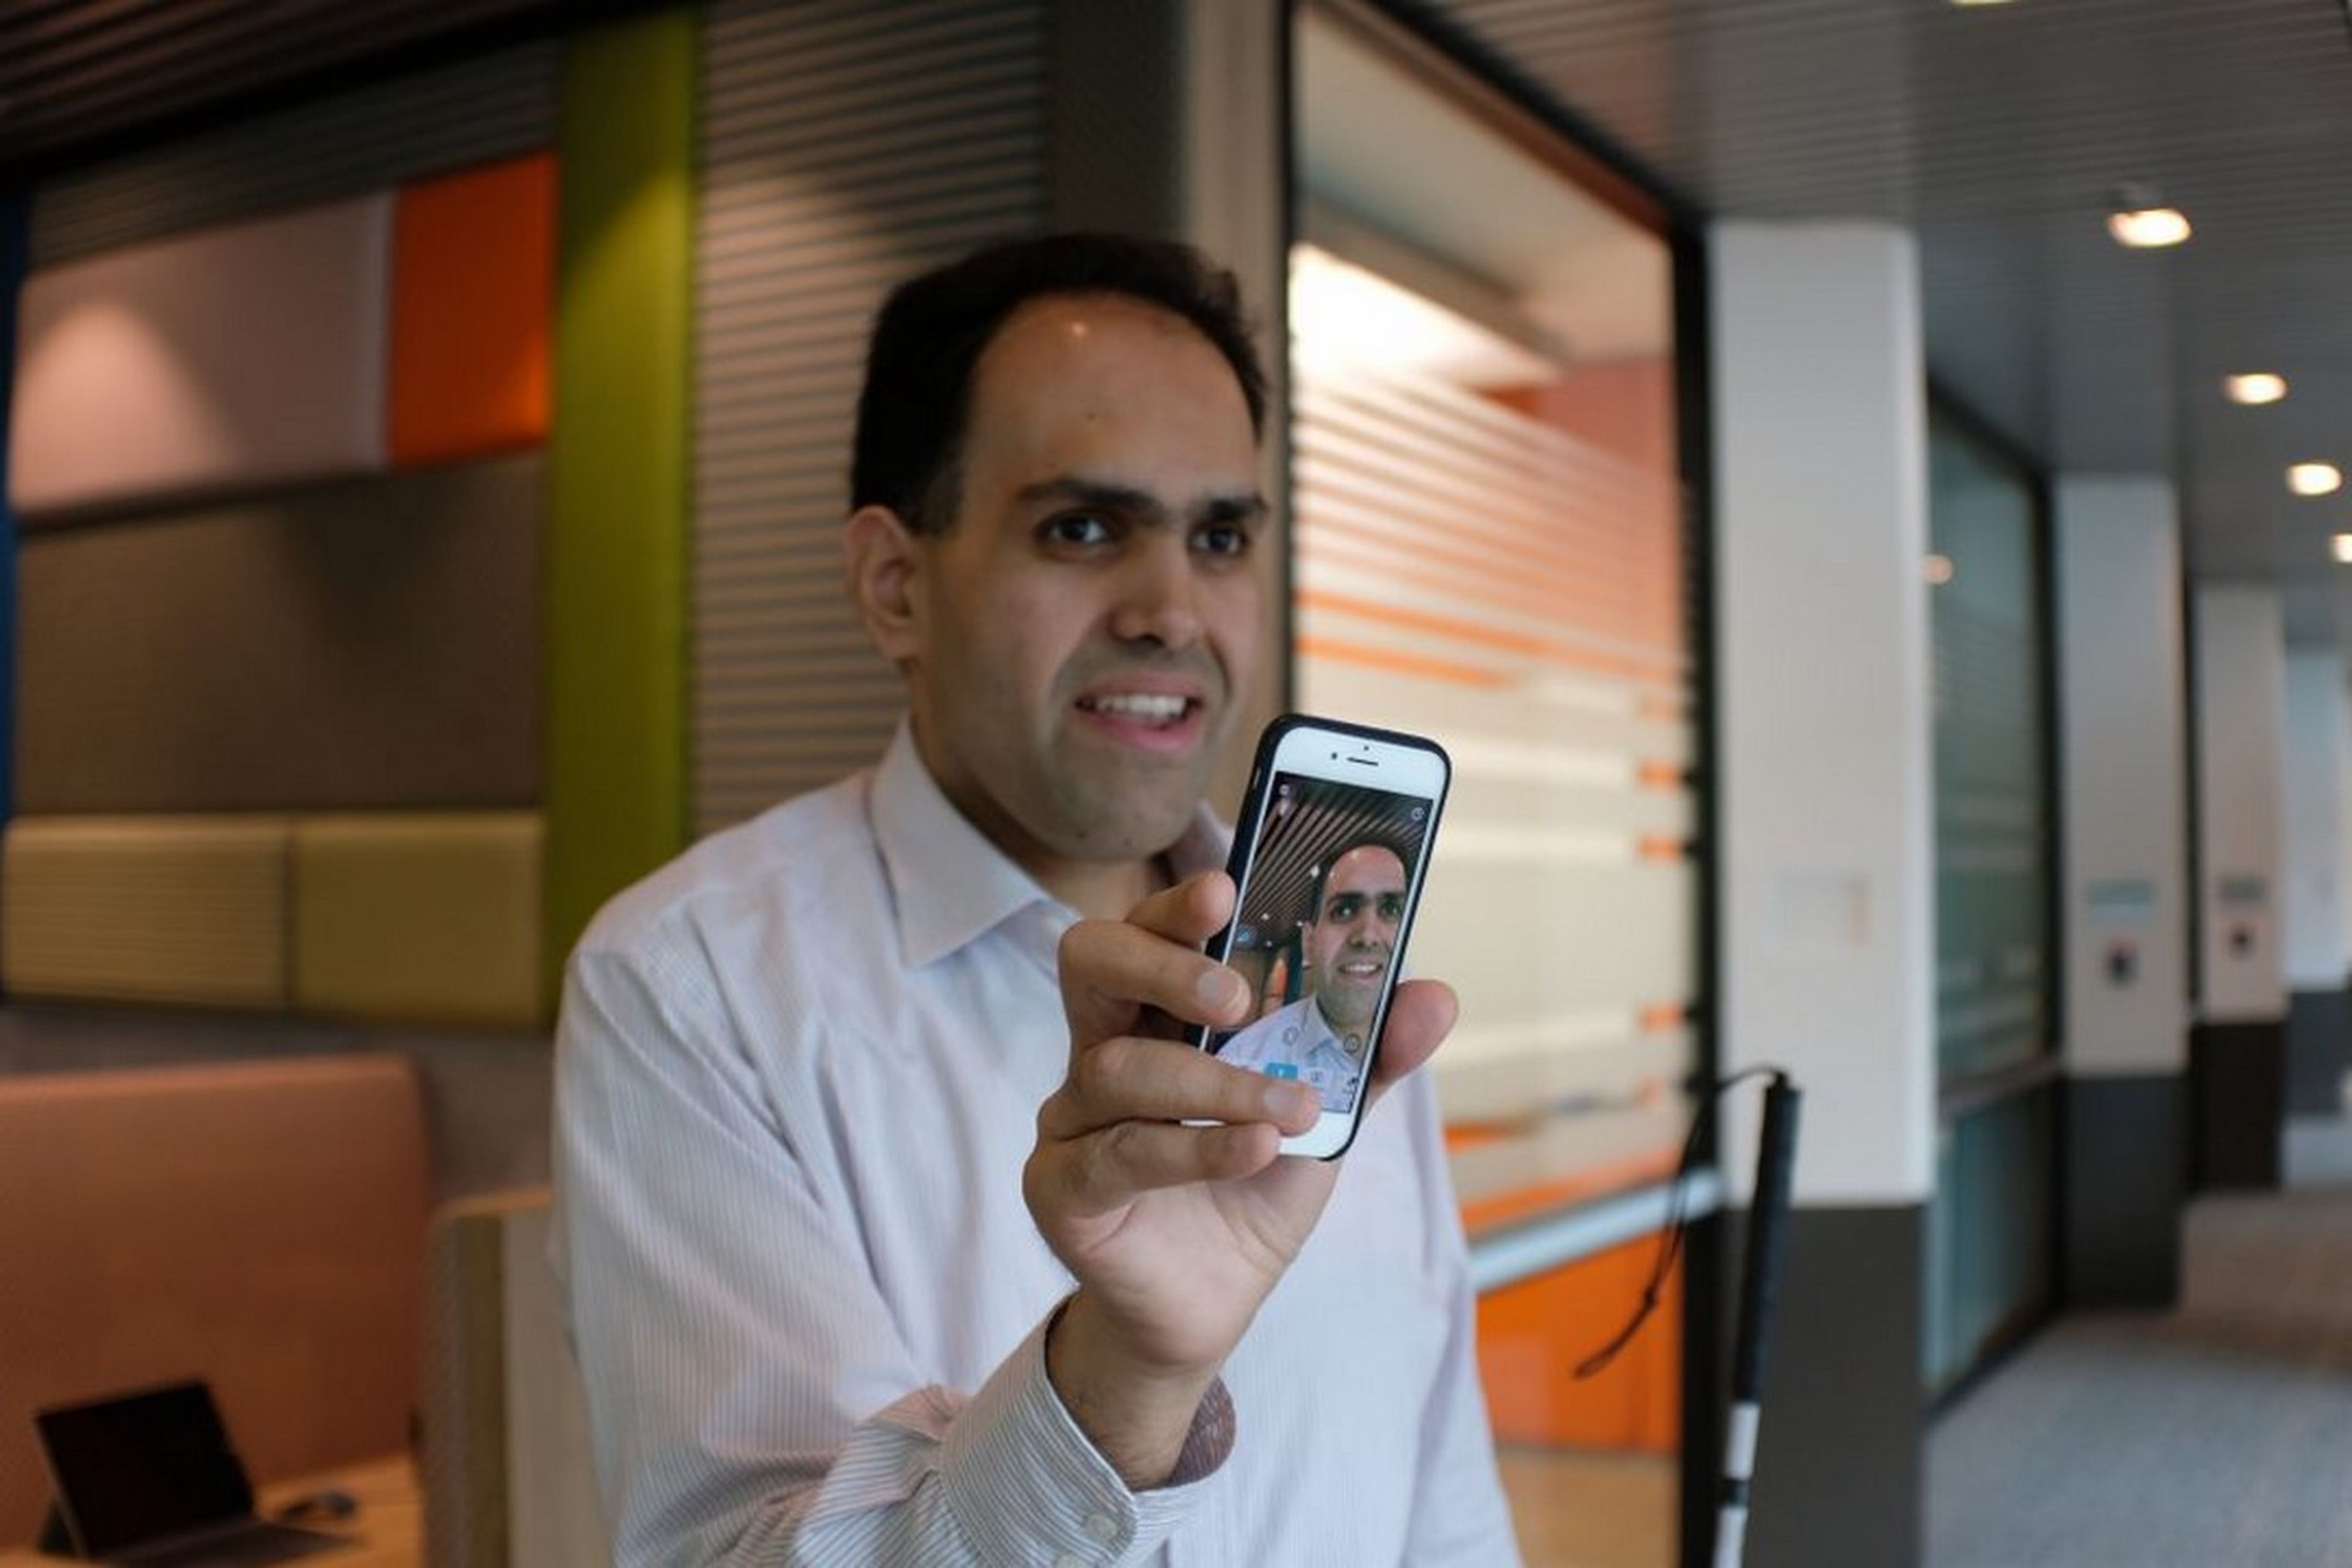 Microsoft lanza una app que describe lo que hay en las fotos a las personas ciegas